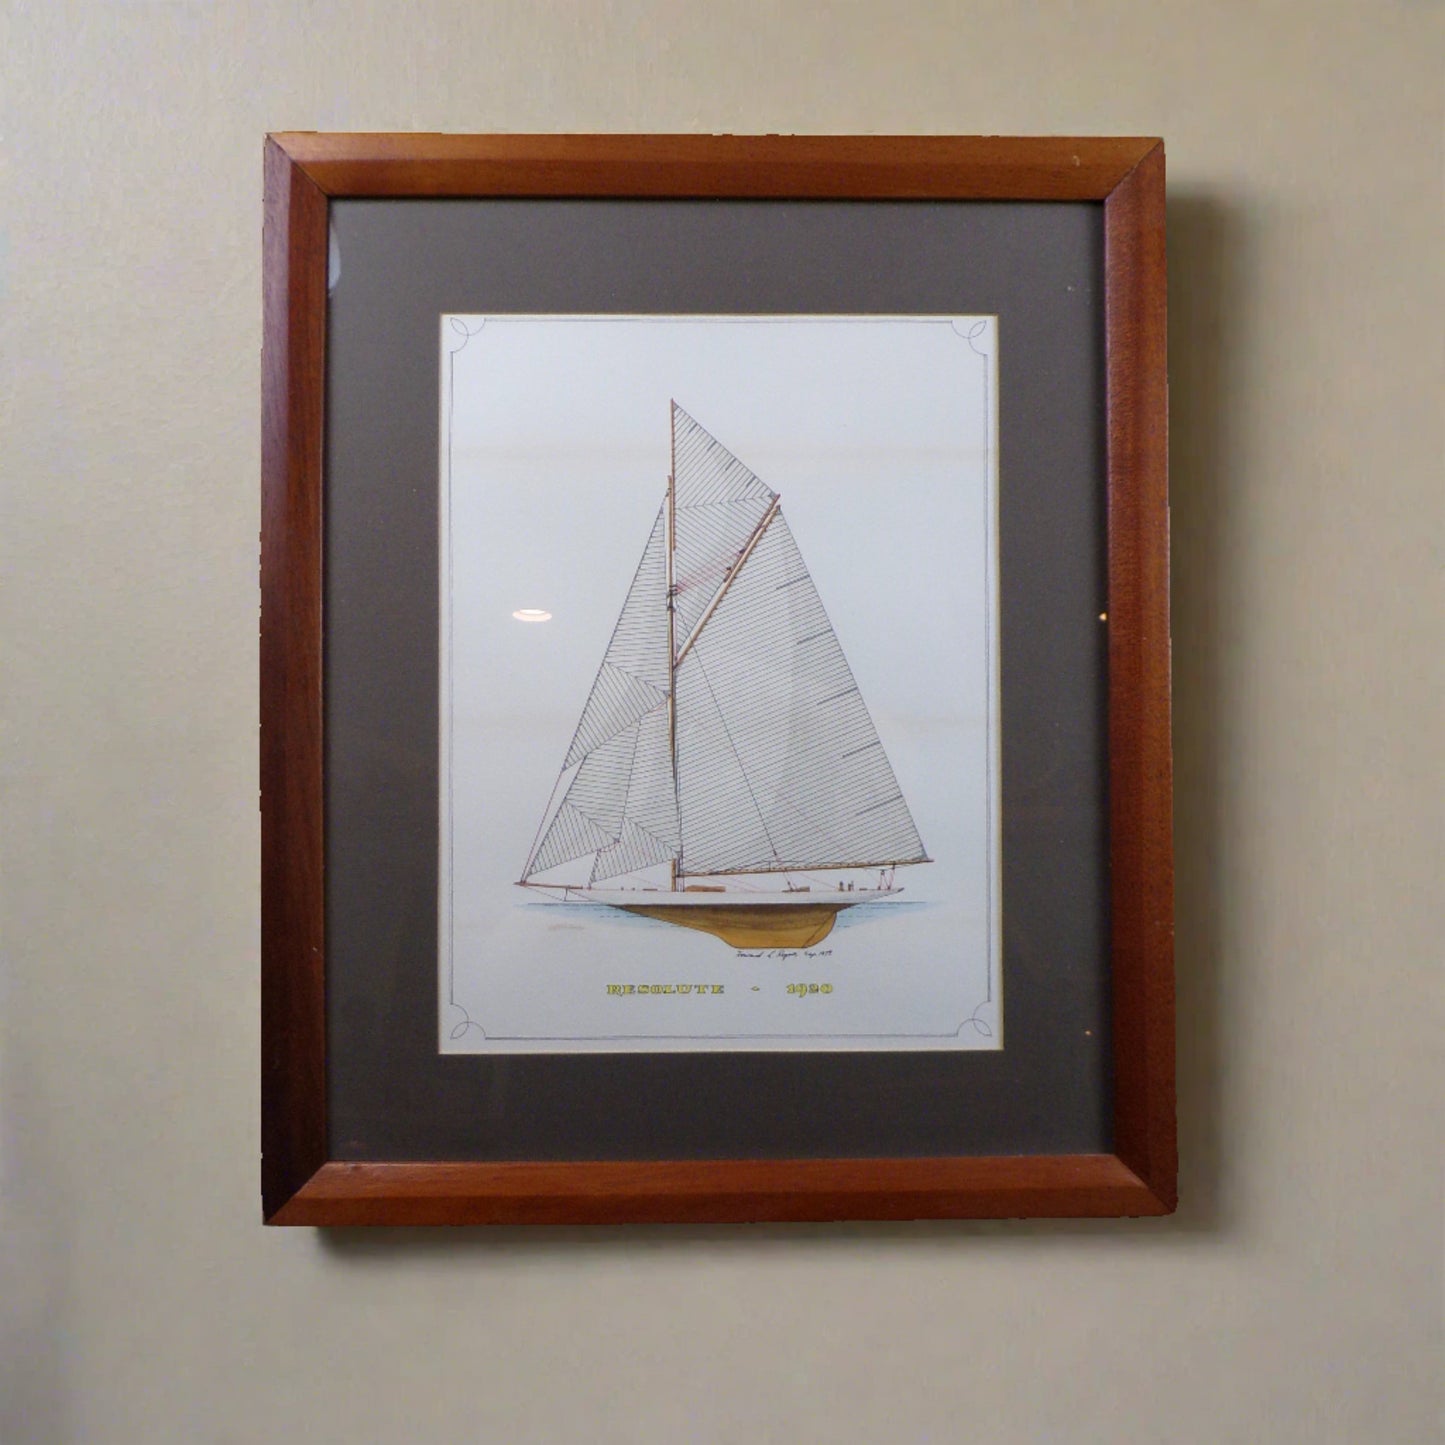 Howard Rogers Framed Ship Art - Resolute 1920